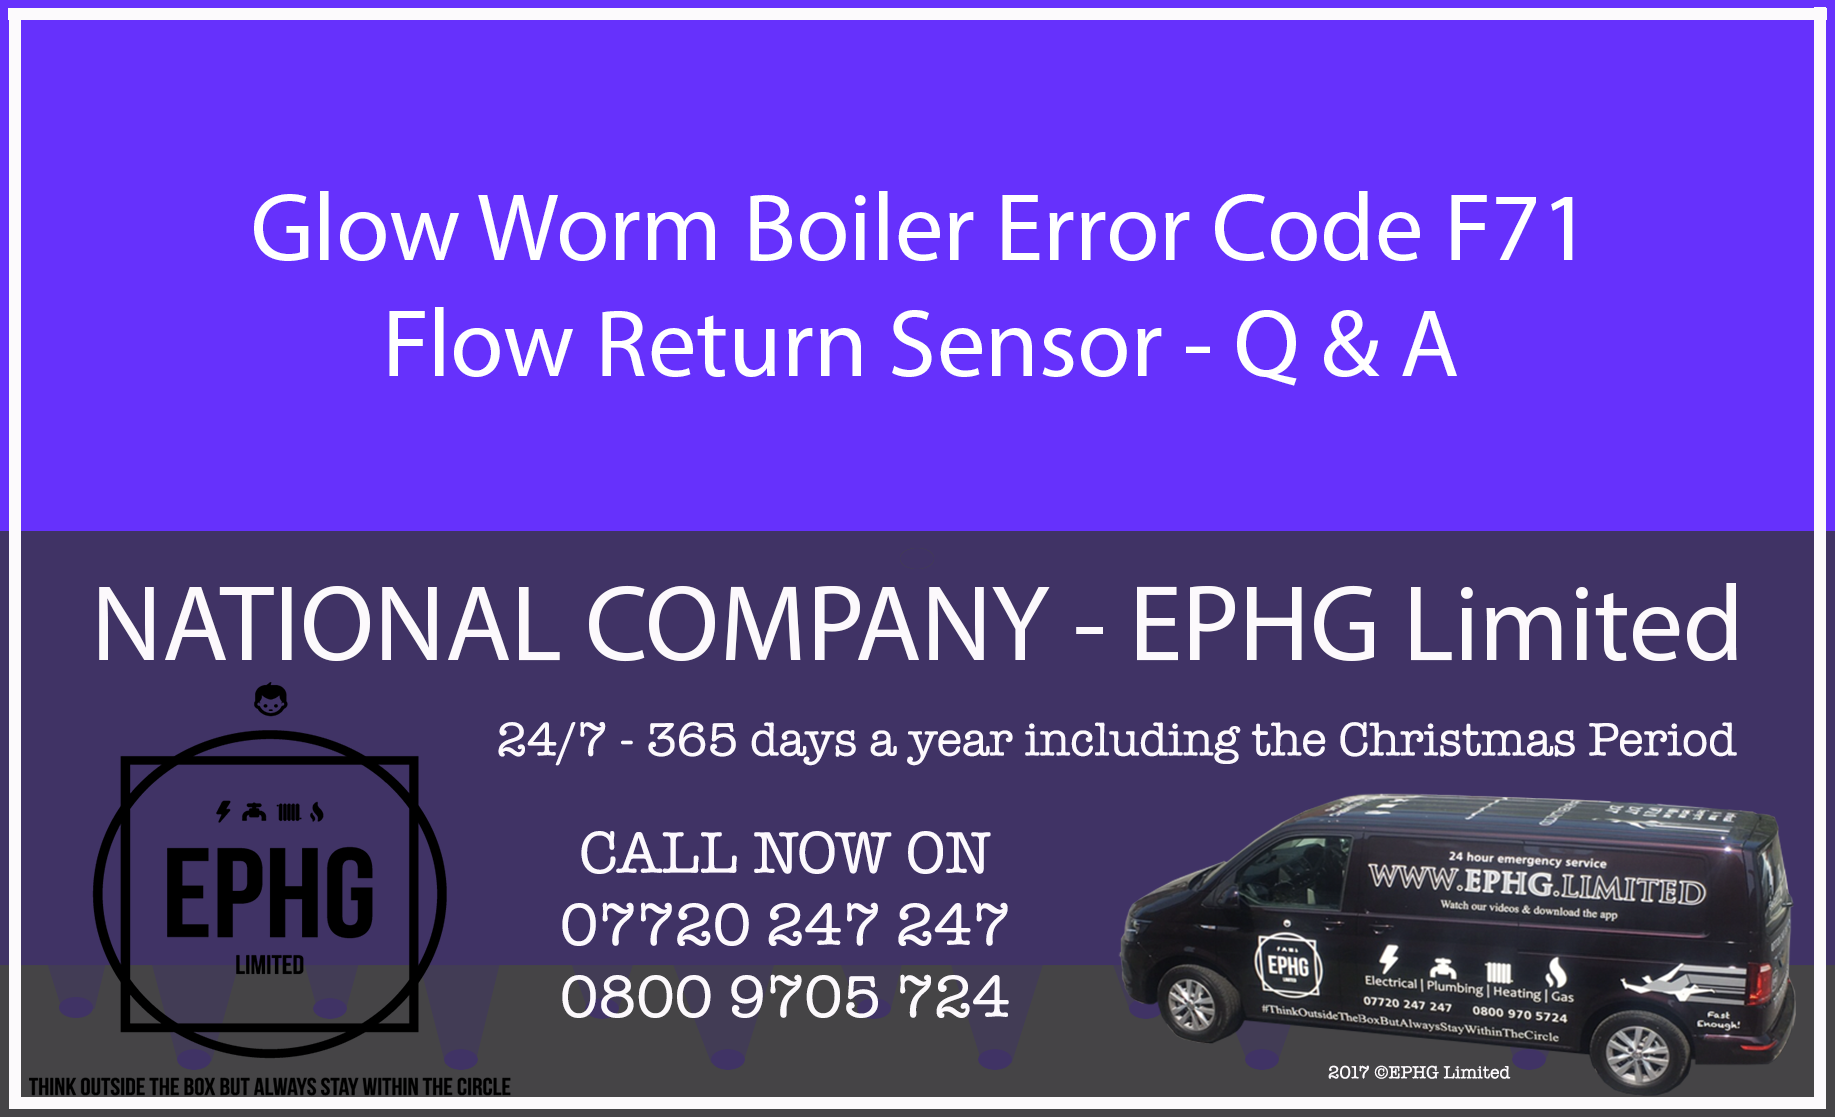 Glow-Worm boiler error code F.71